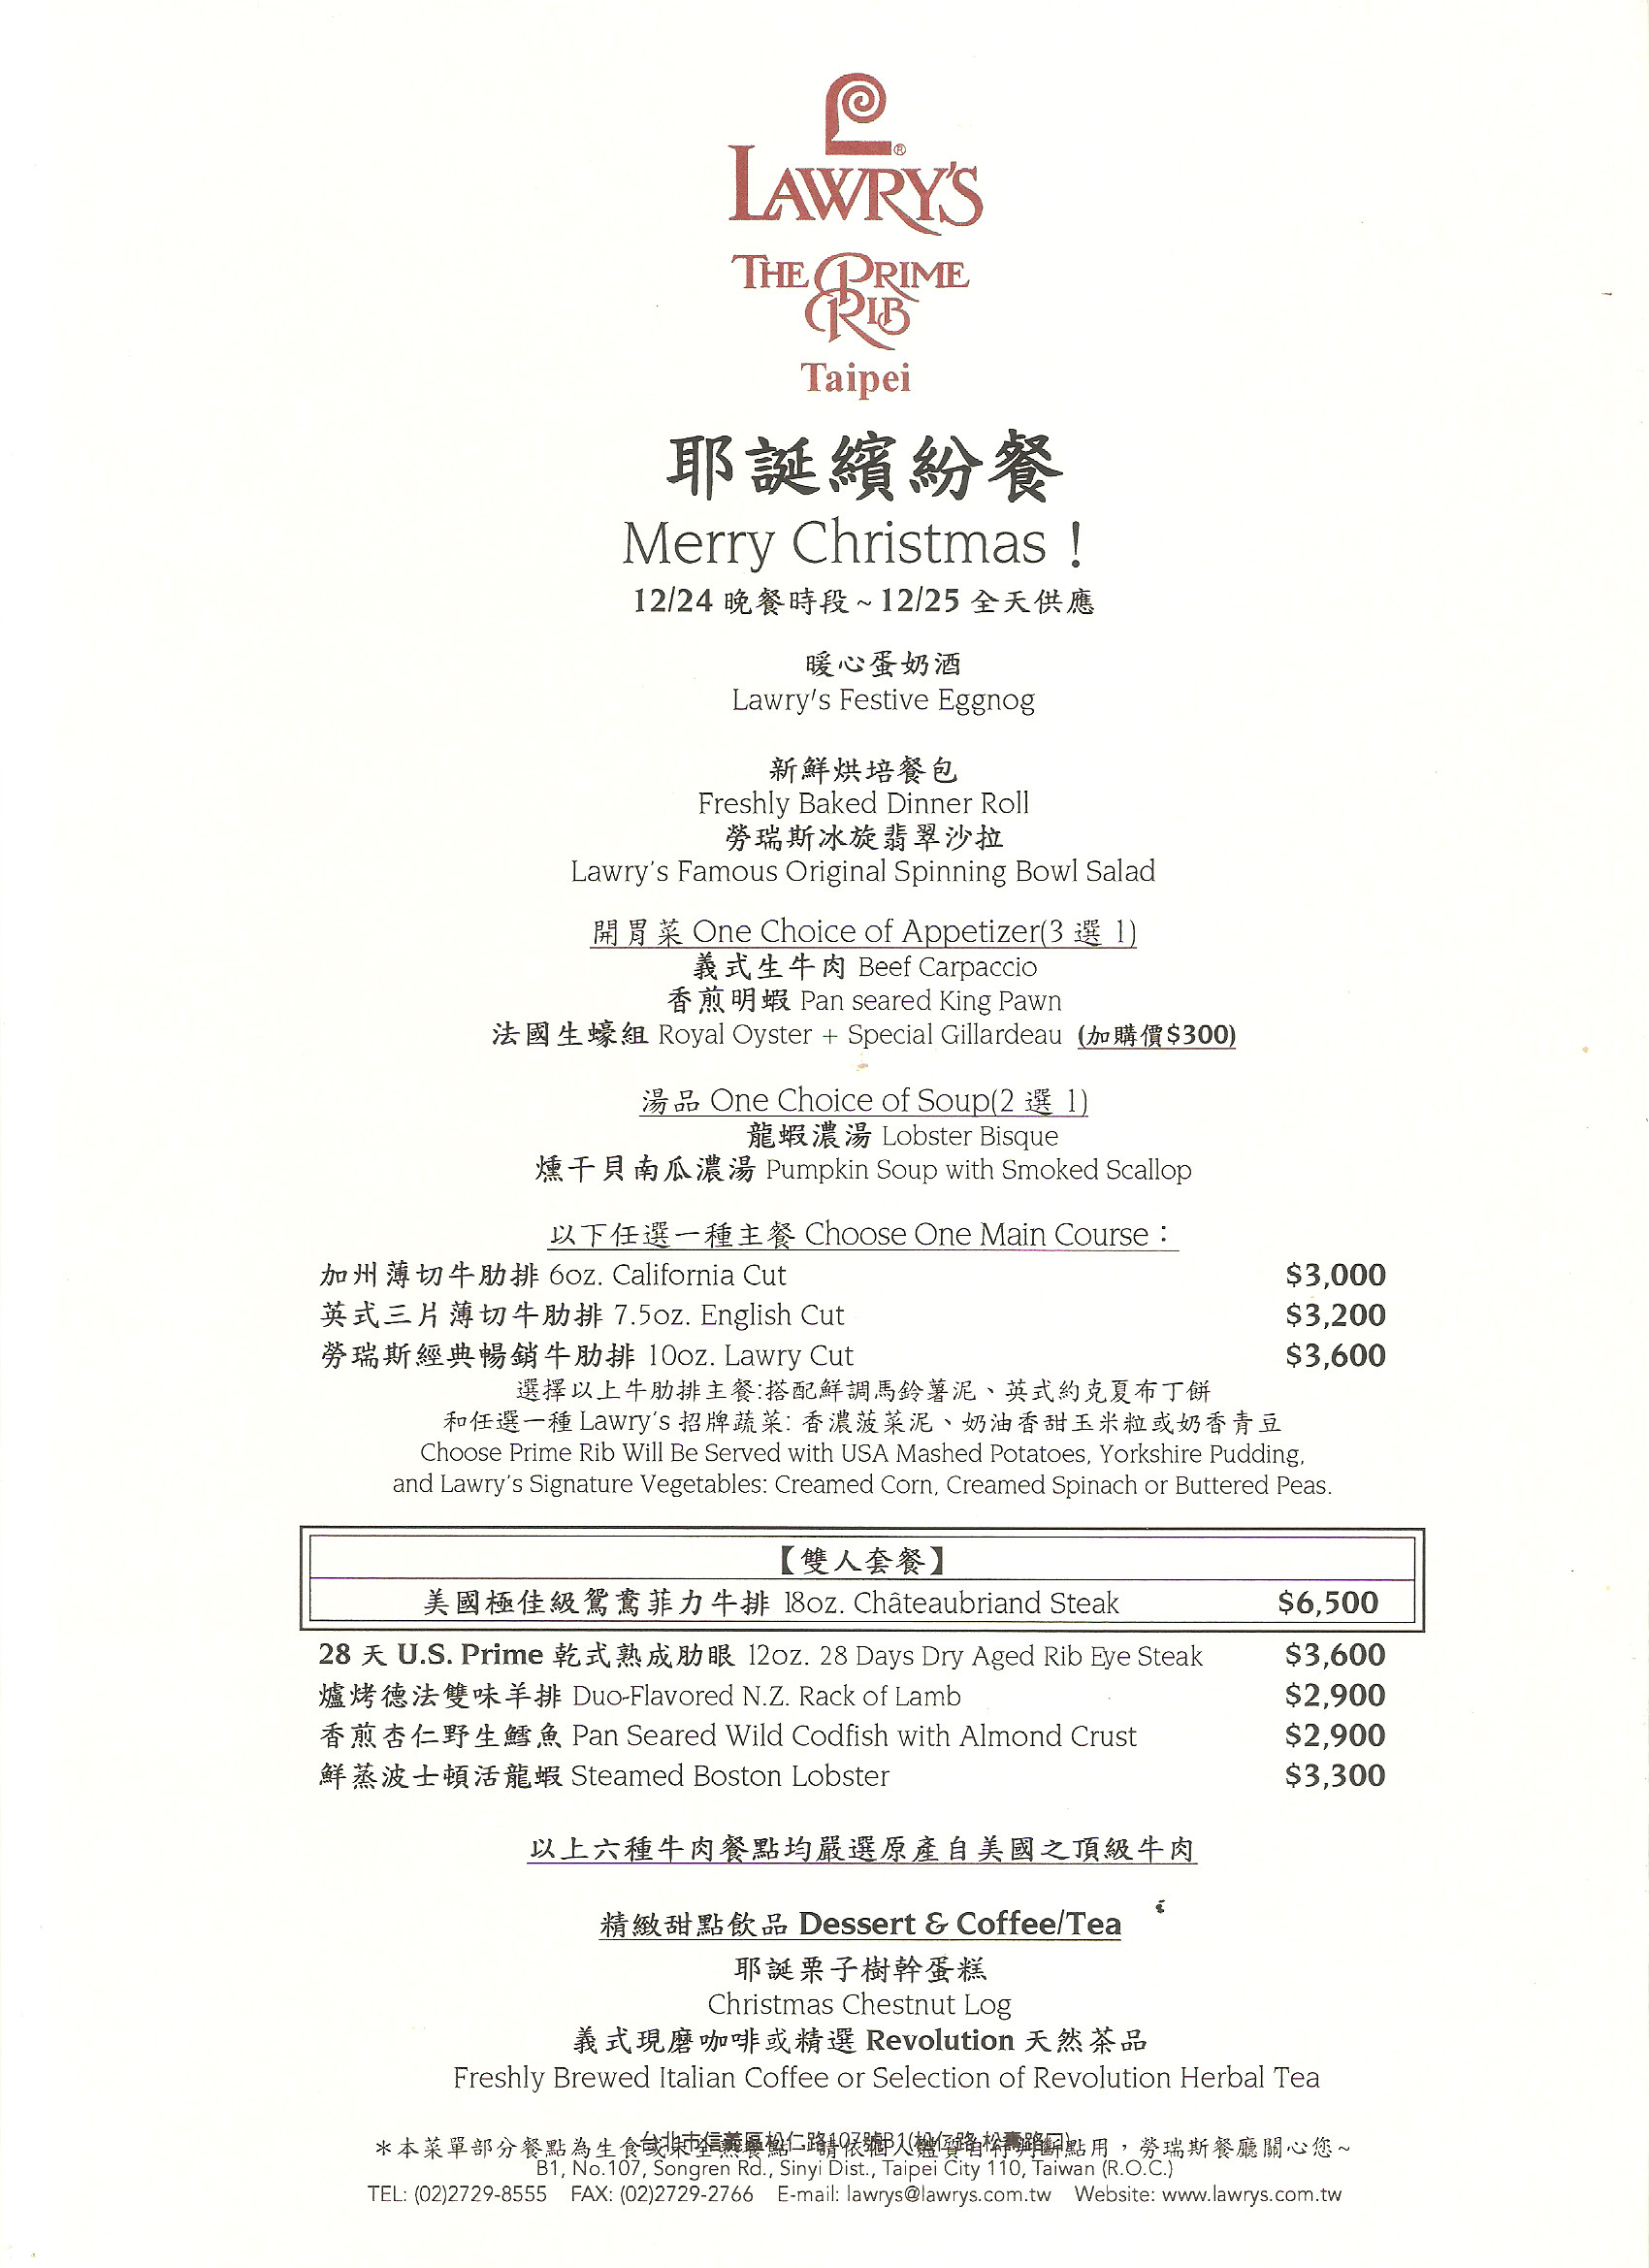 Prime Rib Christmas Menu
 Where to Get Christmas Dinner in Taipei Taiwan 2014